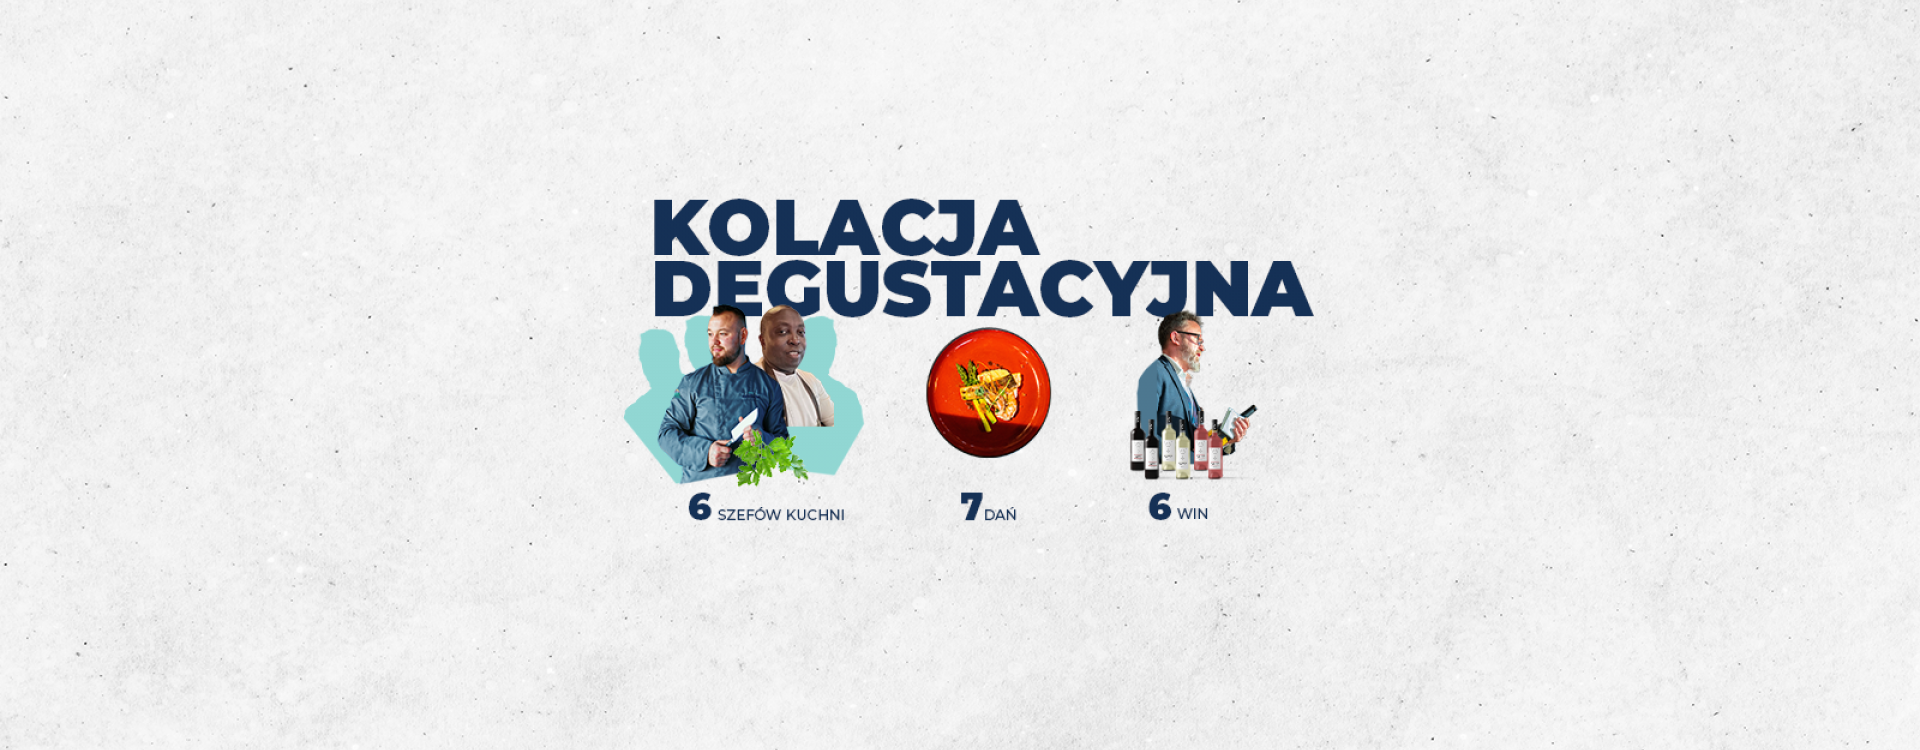 Kolacja Degustacyjna - 6 kucharzy, 7 dań i 5 win!